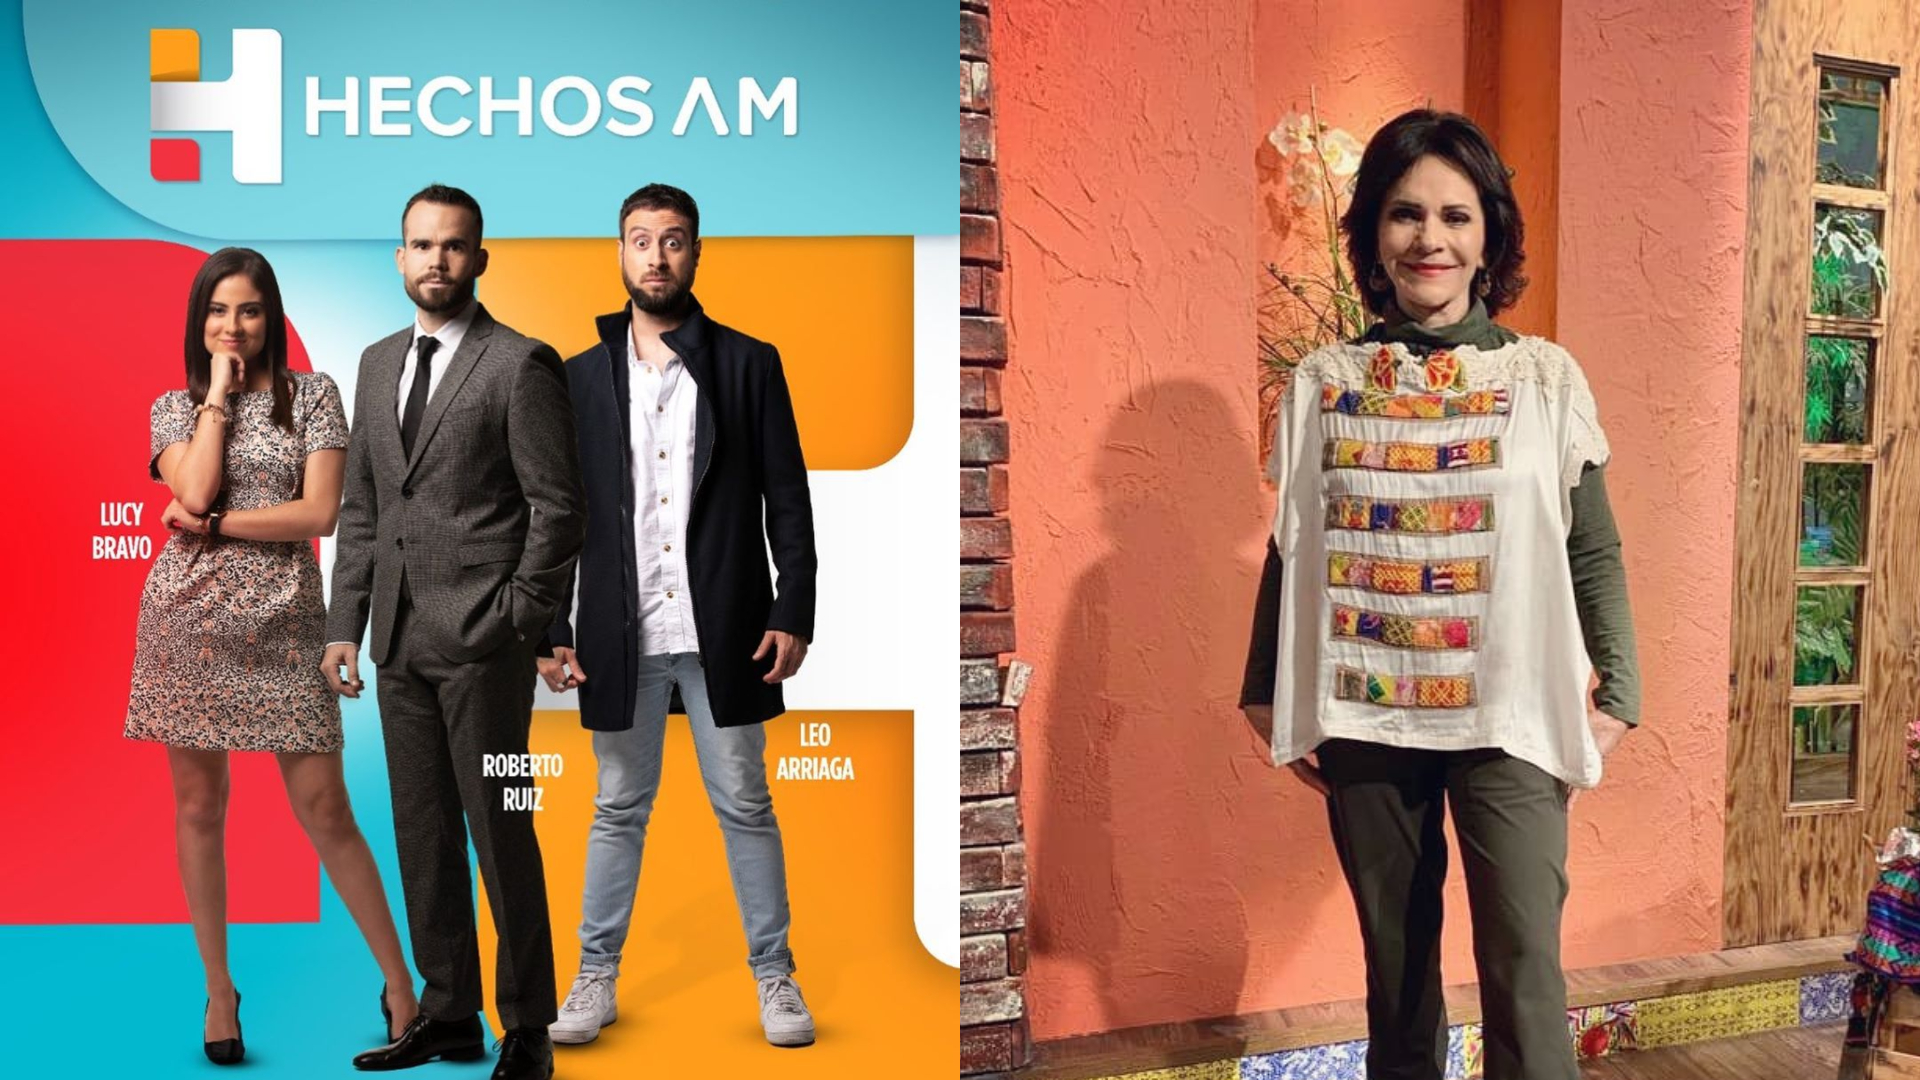 Pati Chapoy es una de las críticas más feroces dentro de TV Azteca para con los contenidos de la televisora (Foto: Instagram @HechosAM /@chapoypati)